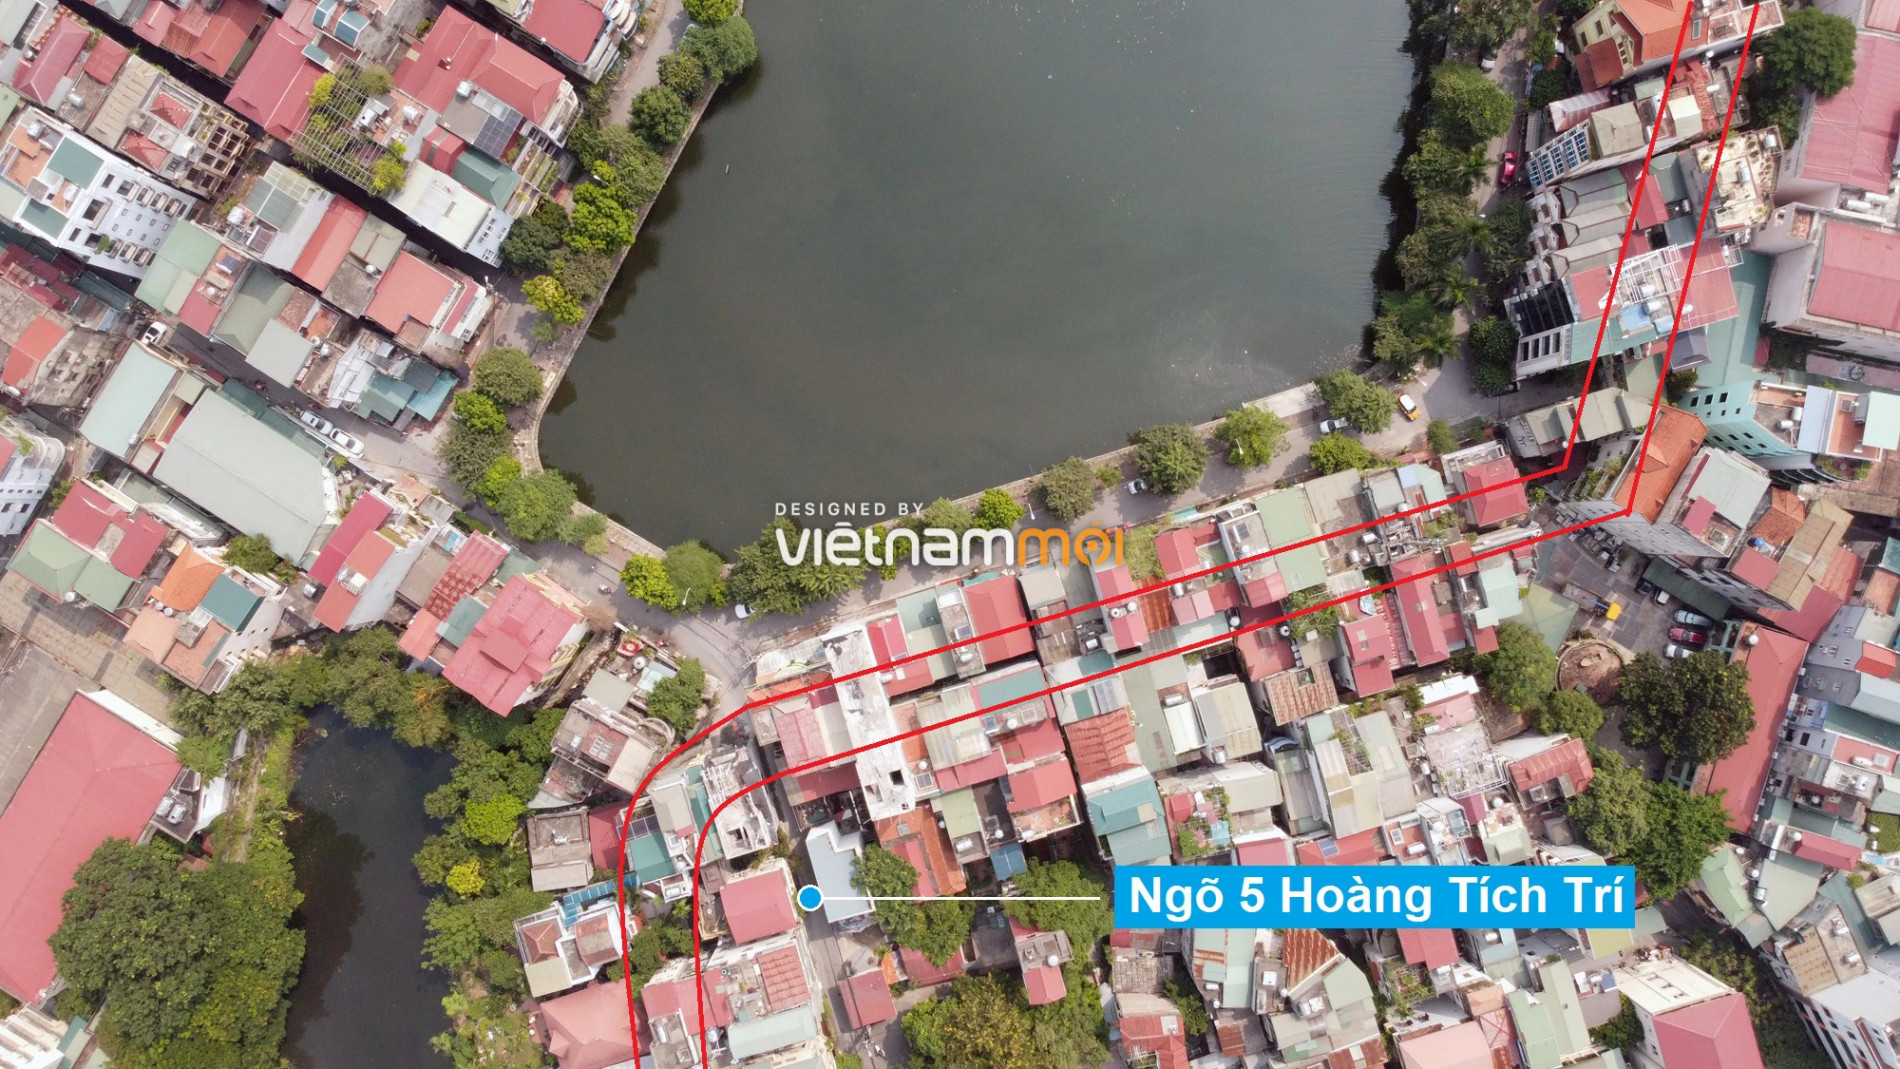 Những khu đất sắp thu hồi để mở đường ở quận Đống Đa, Hà Nội (phần 2) - Ảnh 6.